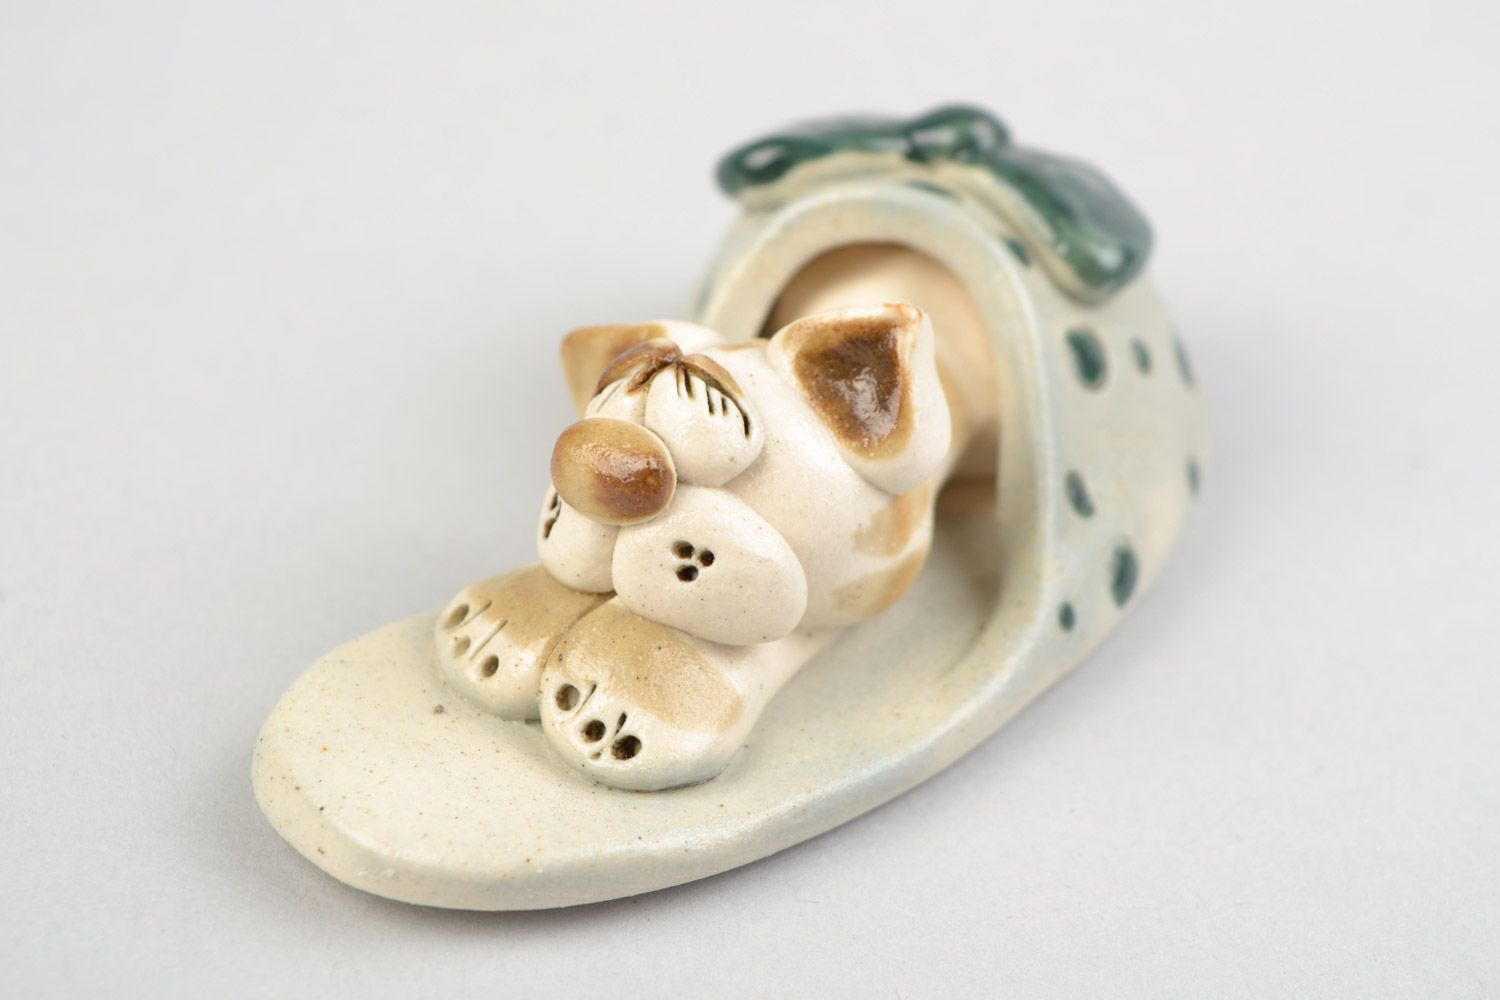 Авторская расписанная глазурью глиняная фигурка кота в тапке ручной работы фото 4